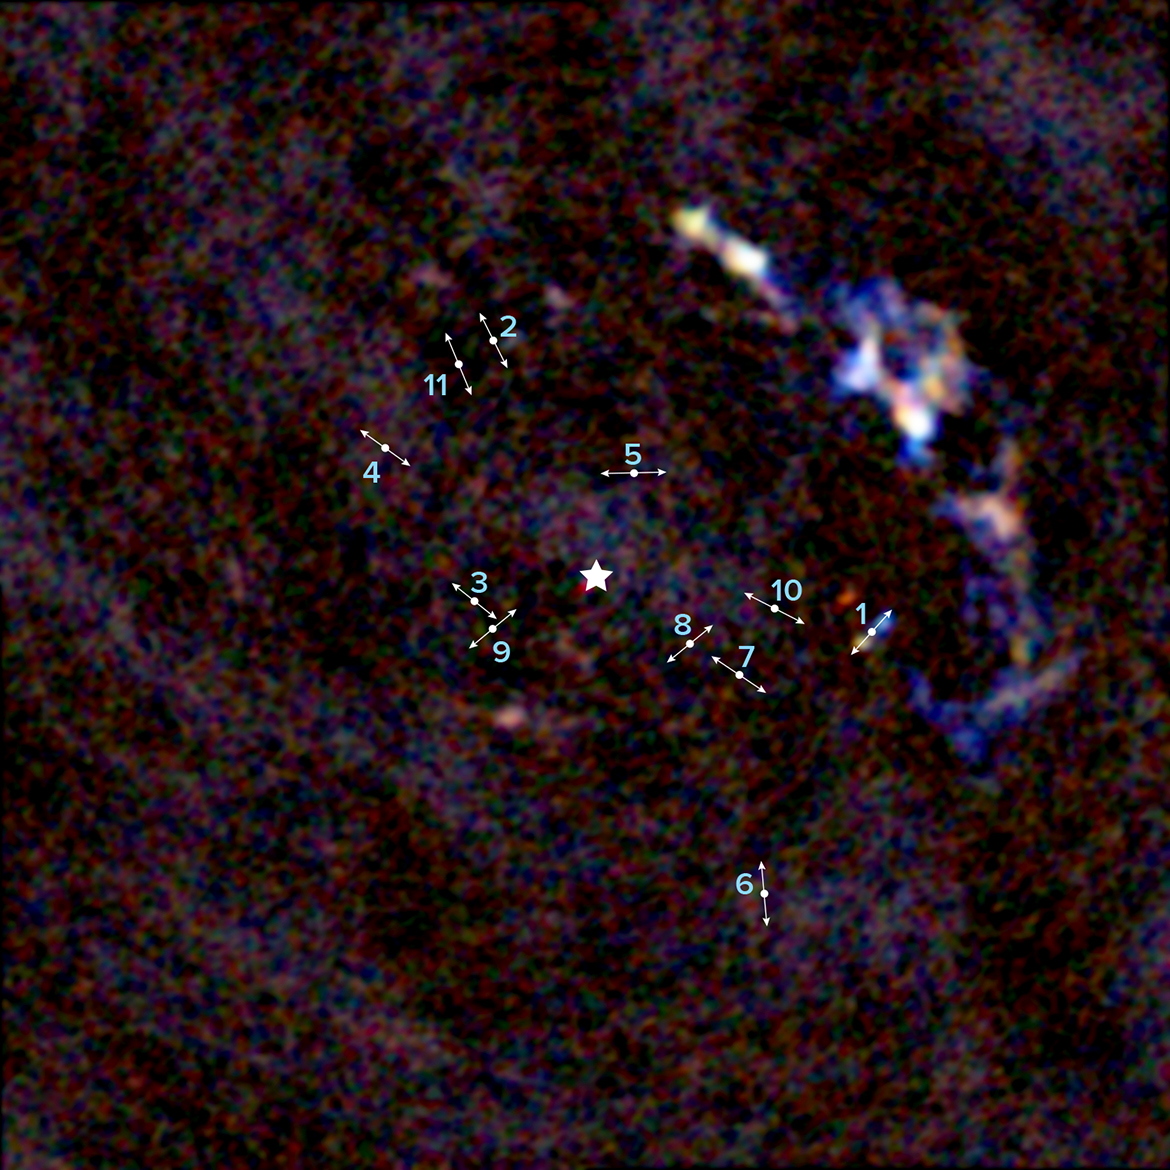 Imagen del centro de la Vía Láctea tomada por ALMA donde se aprecian 11 jóvenes protoestrellas a unos 3 años luz de distancia del agujero negro supermasivo de nuestra galaxia. Las líneas indican la dirección de los lóbulos bipolares generados por chorros que emanan de las protoestrellas a gran velocidad. La estrella indica la ubicación de Sagitario A*, el agujero negro supermasivo de 4 millones de masas solares situado en el centro de nuestra galaxia. Créditos: ALMA (ESO/NAOJ/NRAO), Yusef-Zadeh et al.; B. Saxton (NRAO/AUI/NSF)